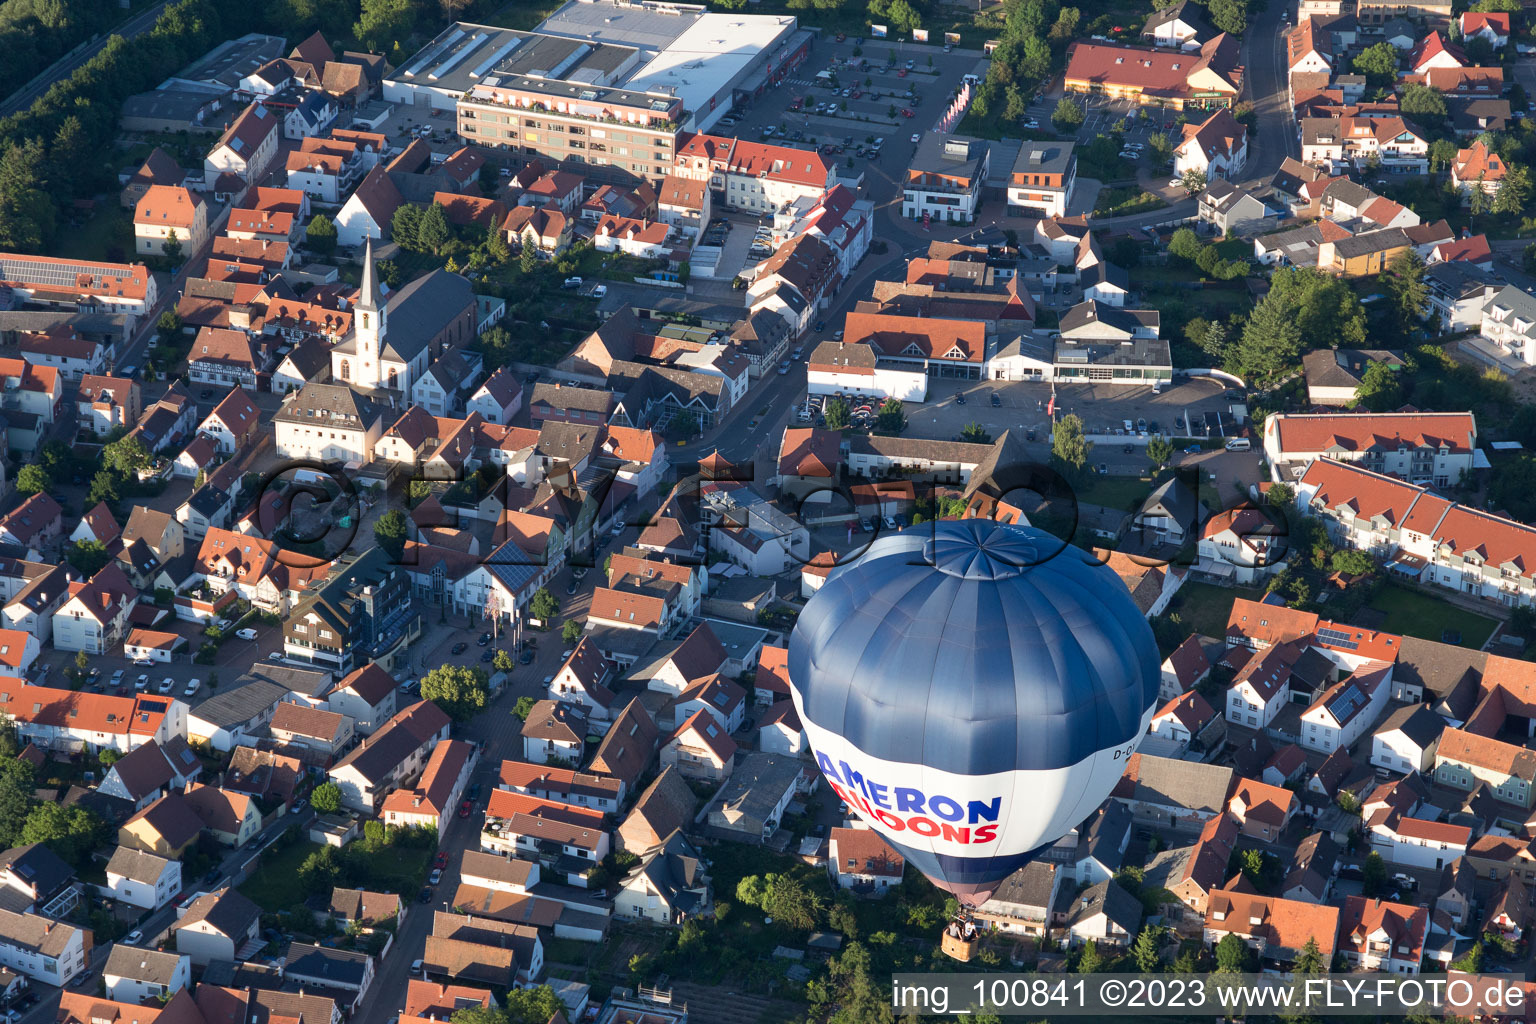 Dudenhofen im Bundesland Rheinland-Pfalz, Deutschland von der Drohne aus gesehen